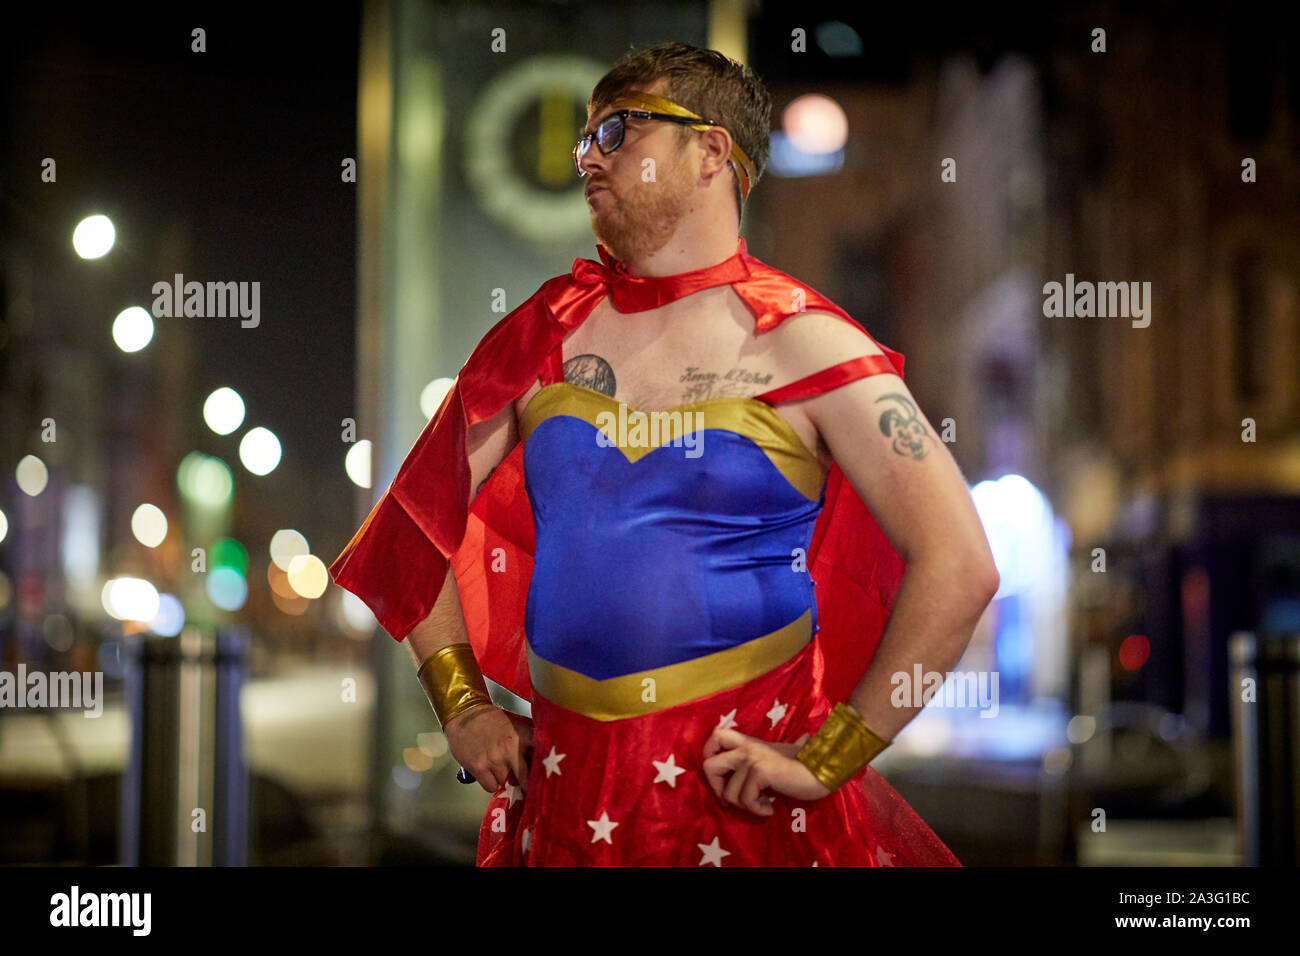 Cardiff Wales, man dressed in fancy dress as Wonderwoman Stock Photo